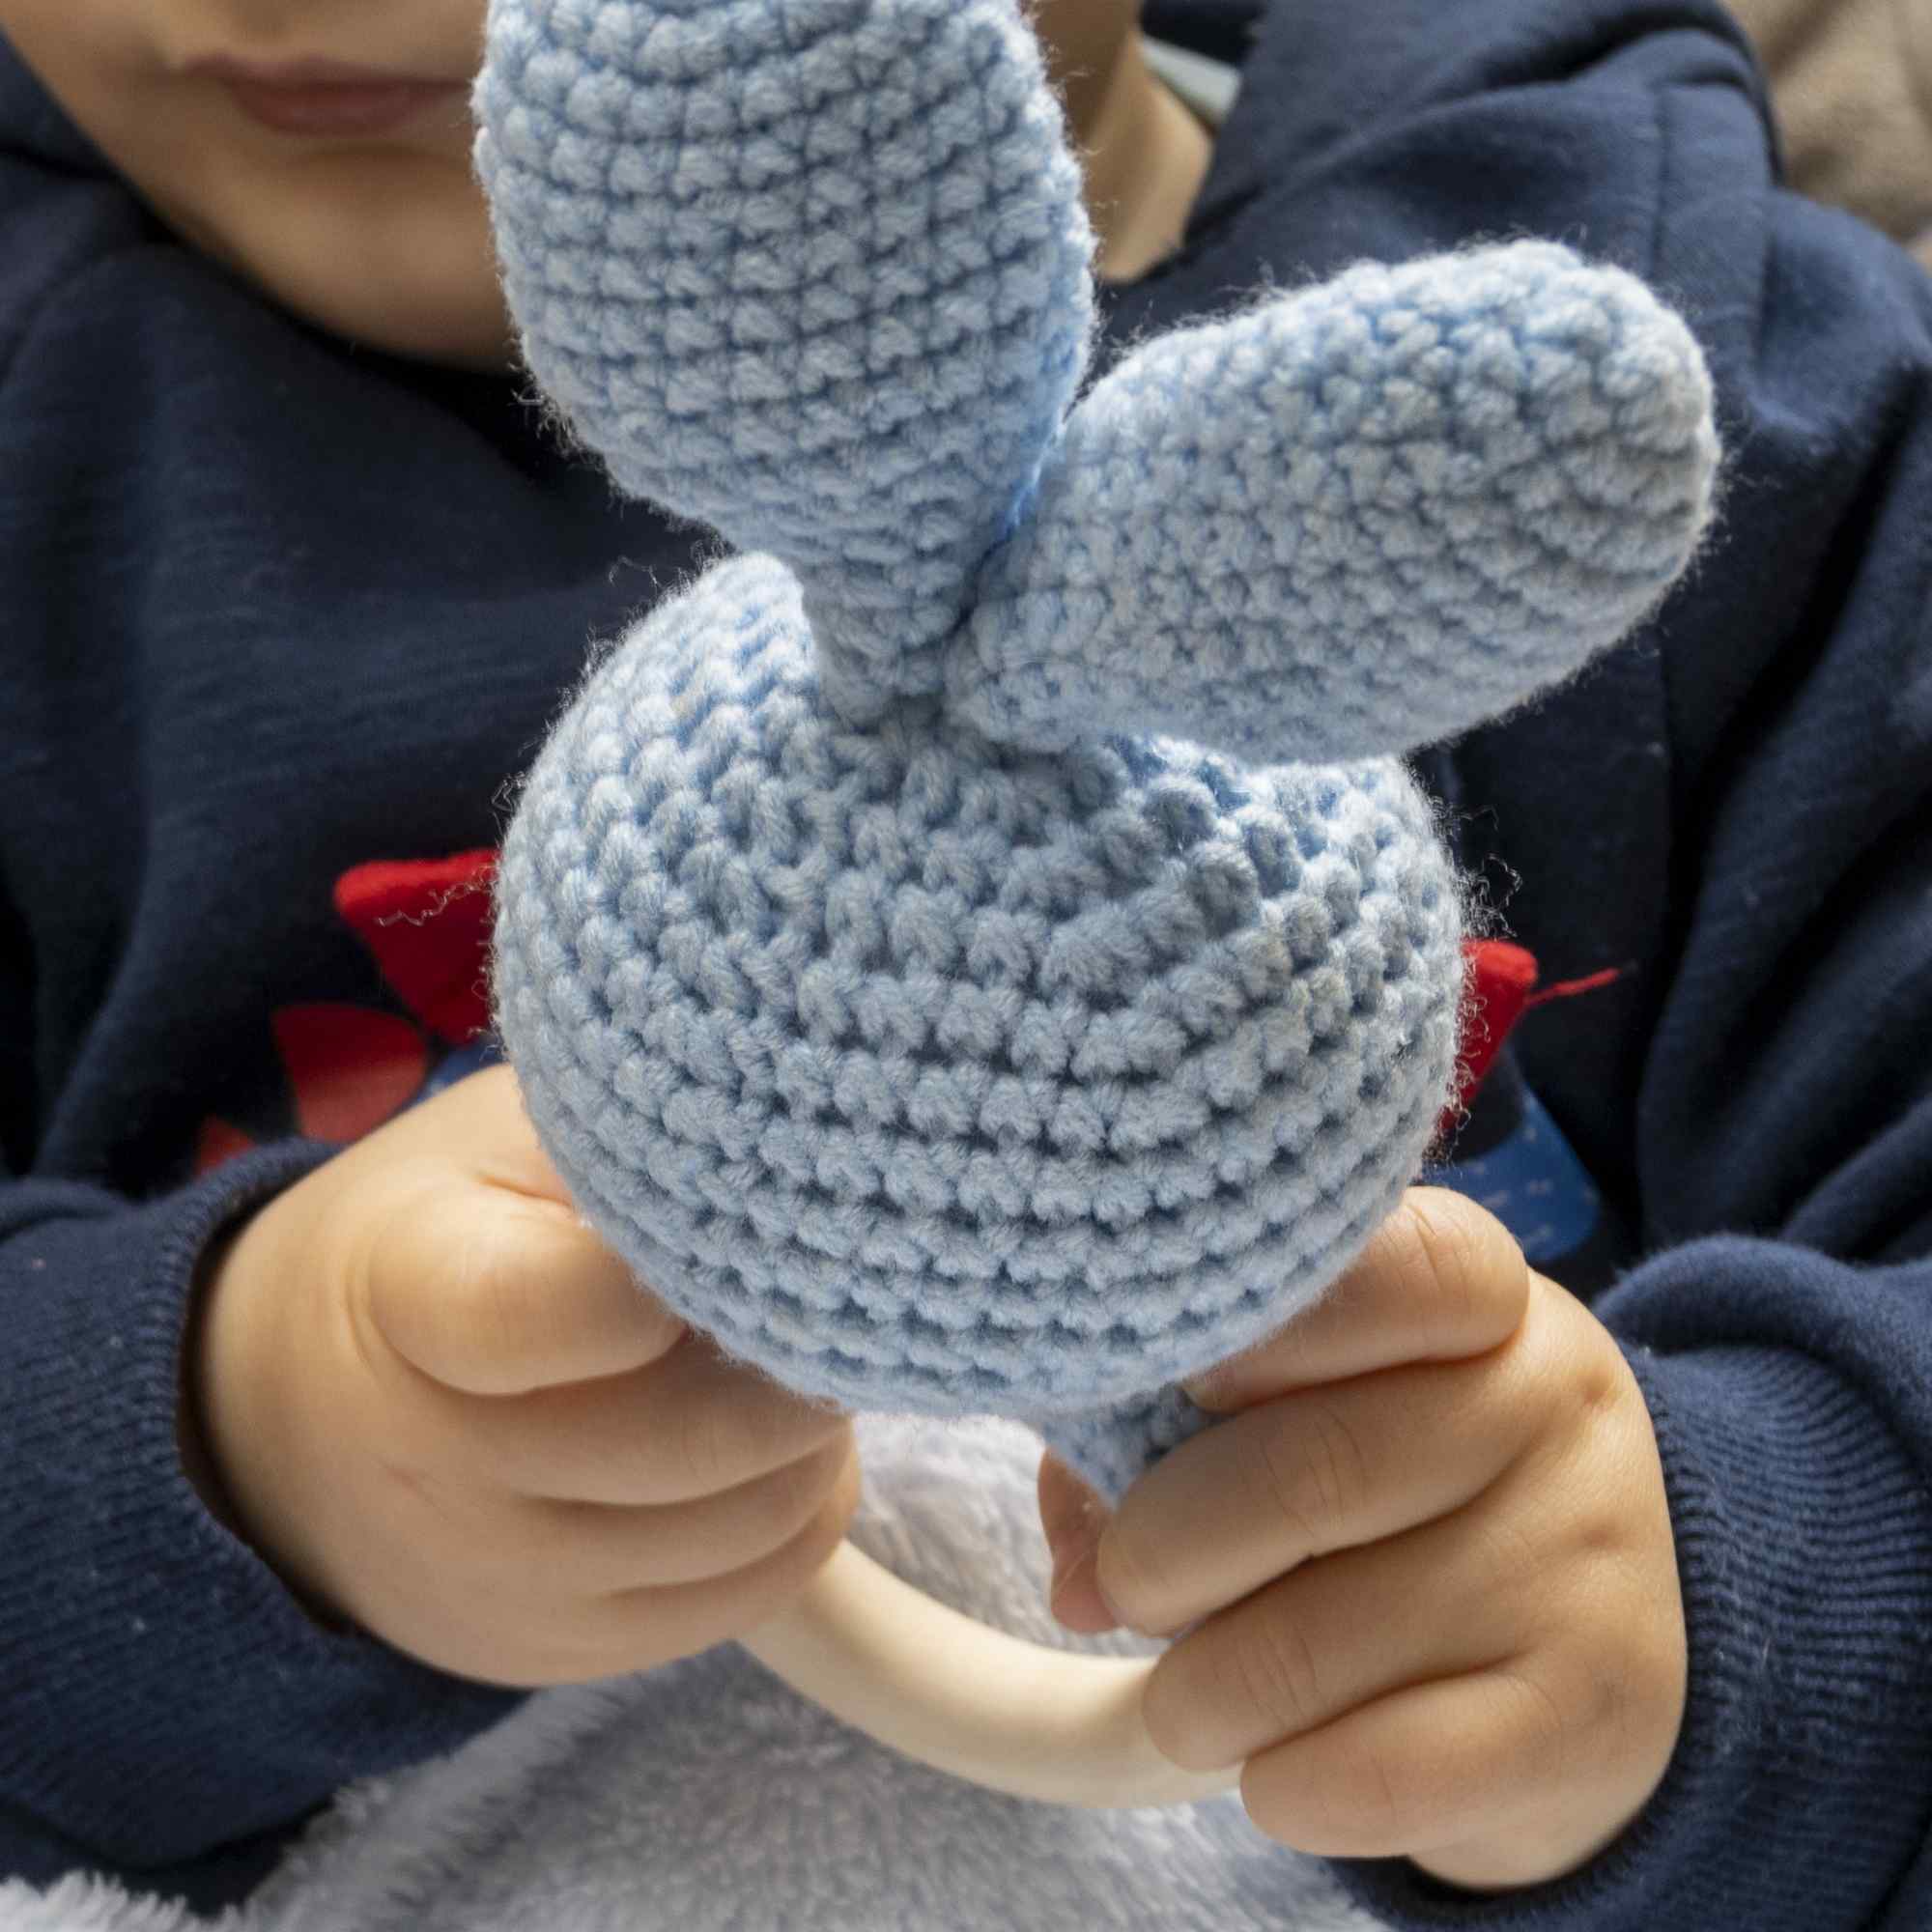 Sonajero para bebe diseño conejo con gancho madera Azul